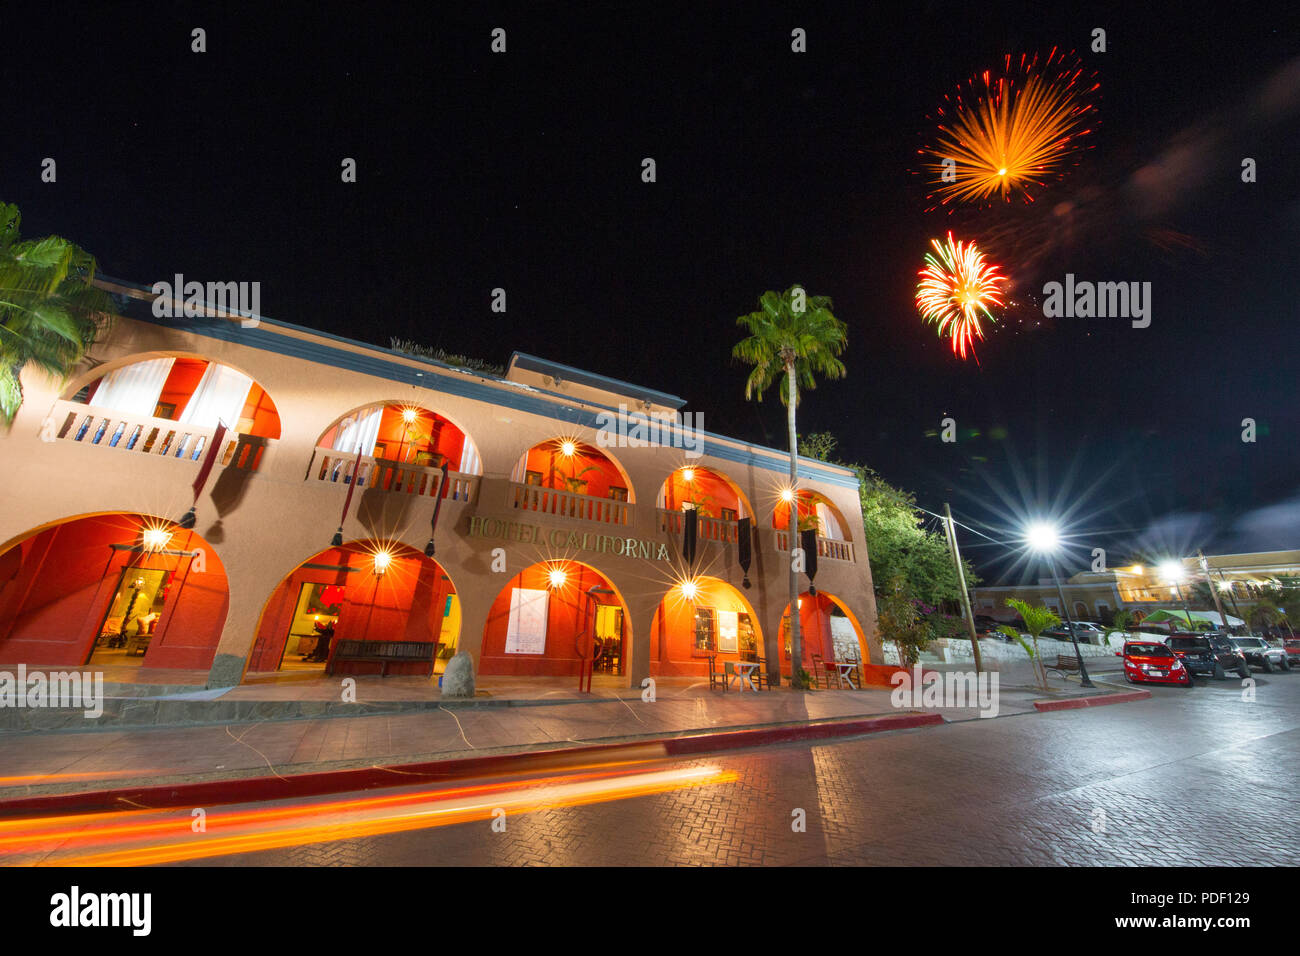 Exterior view of the Hotel California in Todos Santos, Baja California Sur, Mexico. Stock Photo